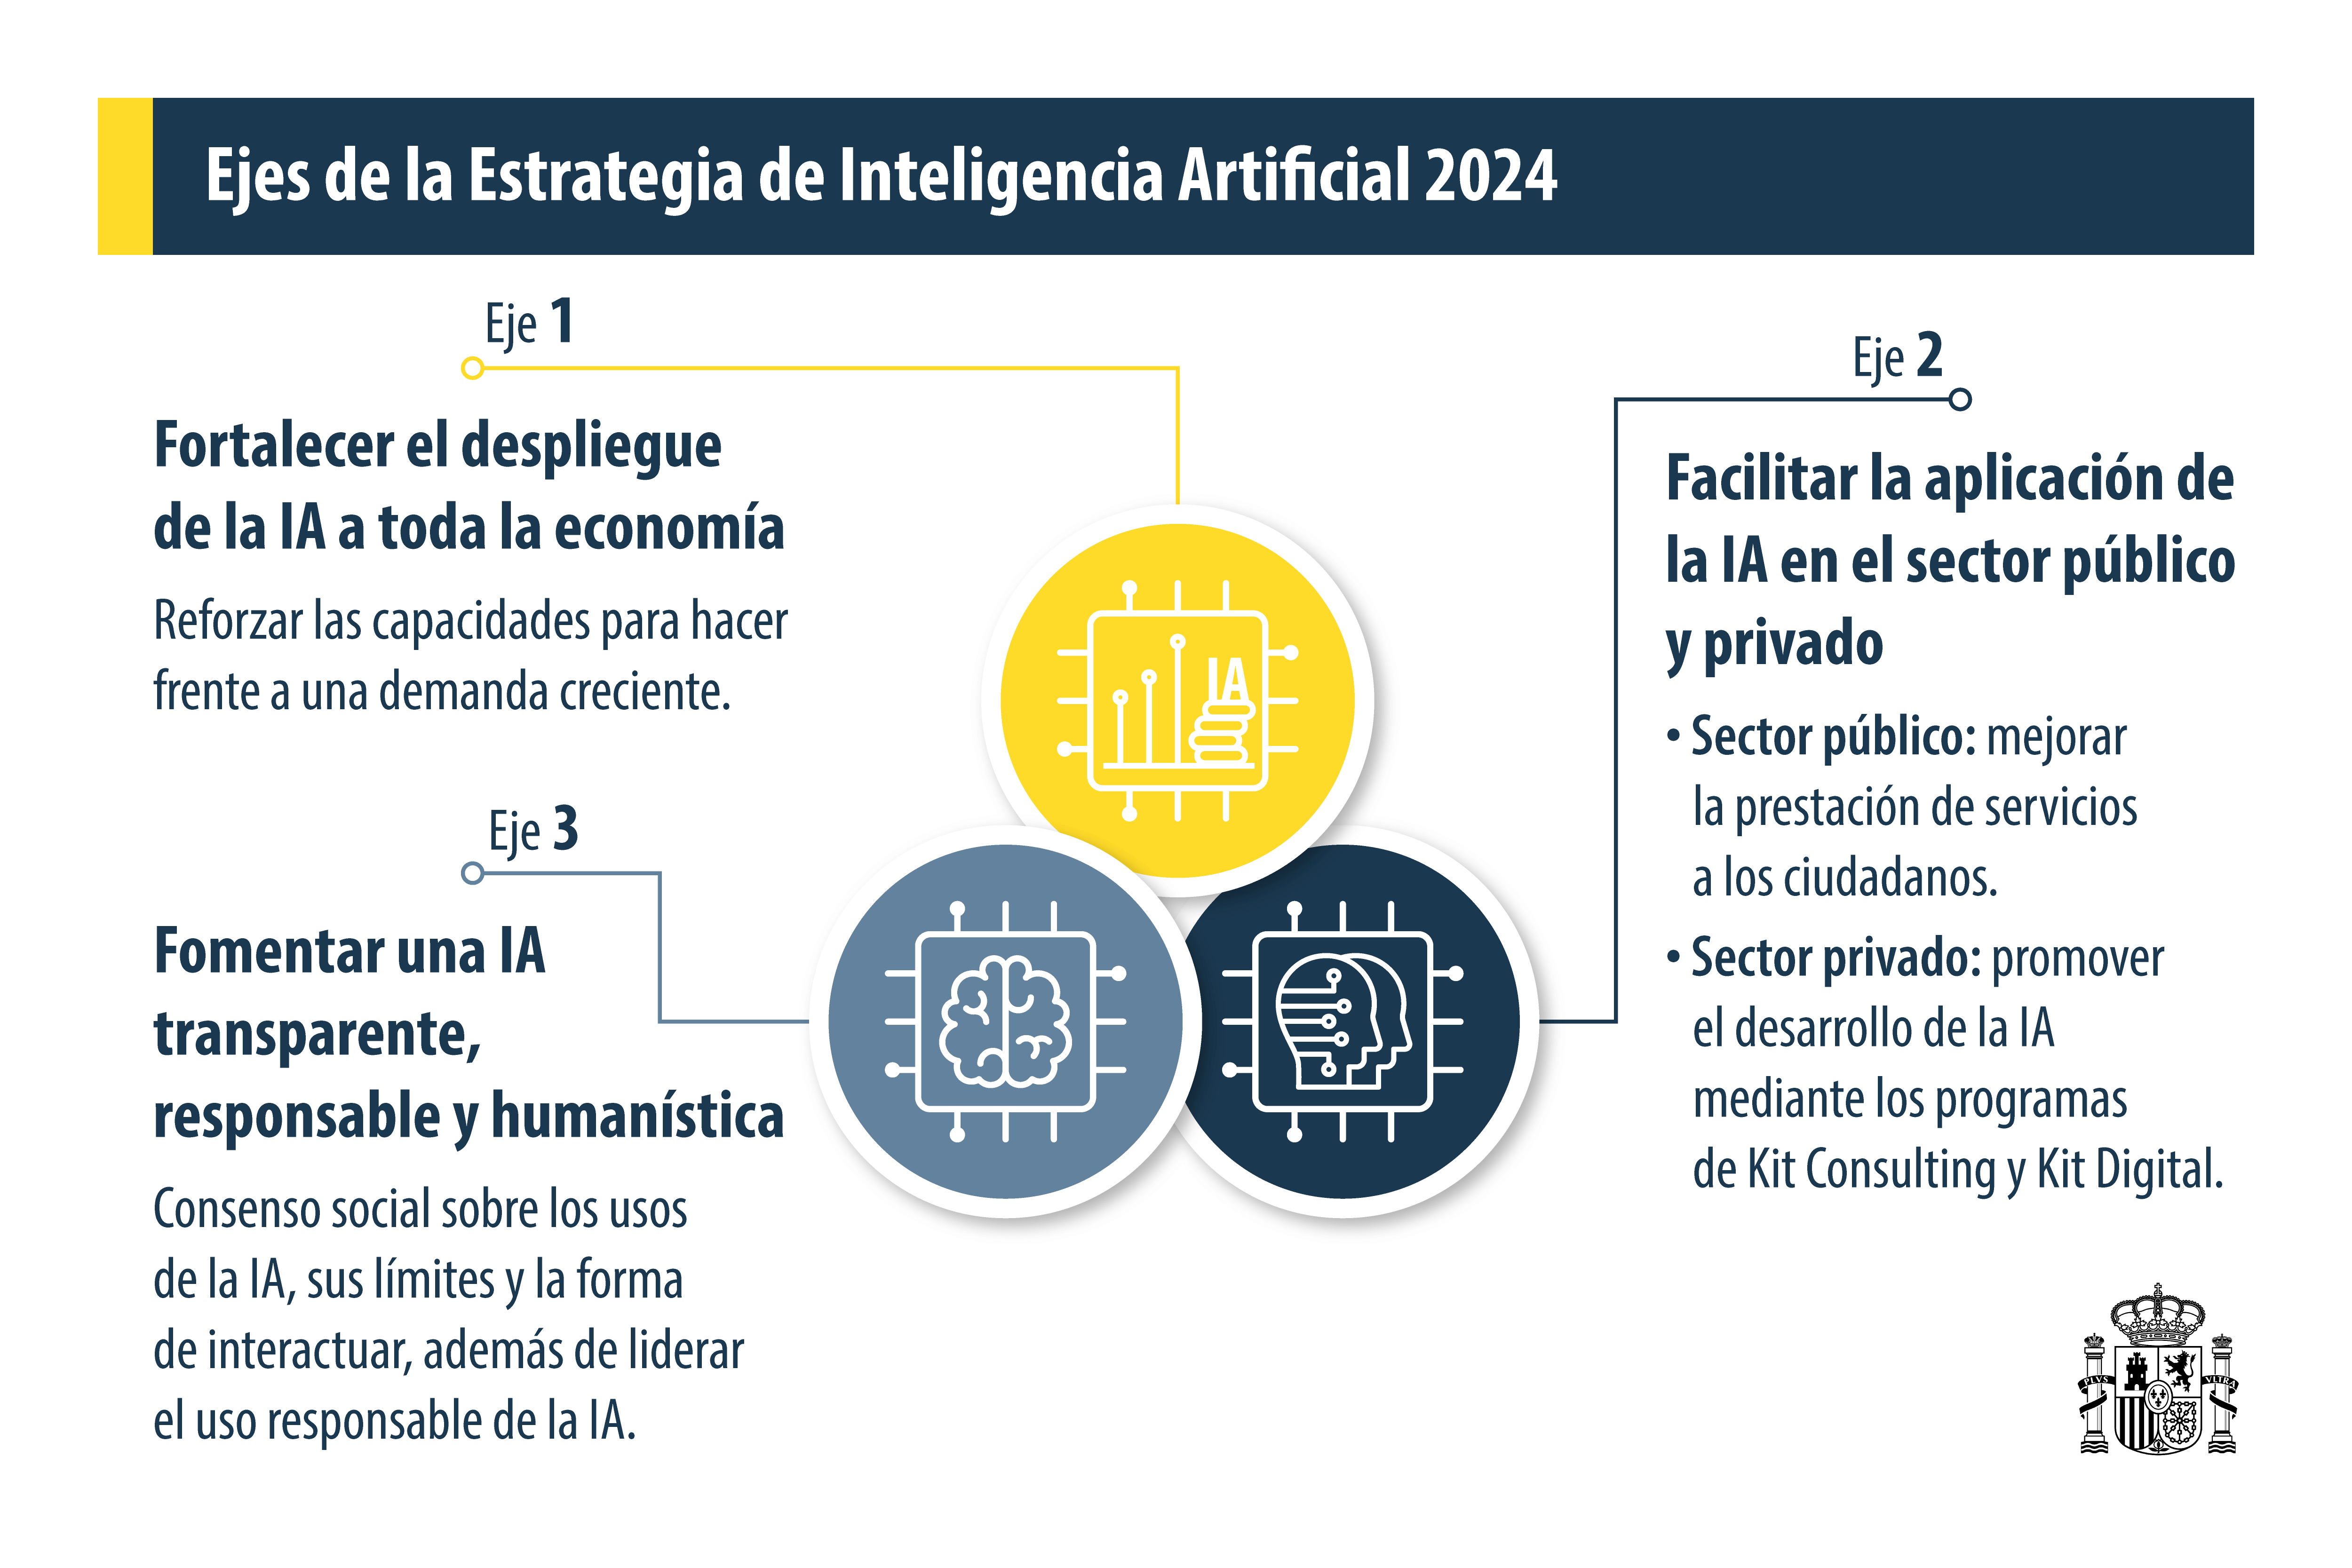 Ejes de la Estrategia de Inteligencia Artificial (IA) España 2024